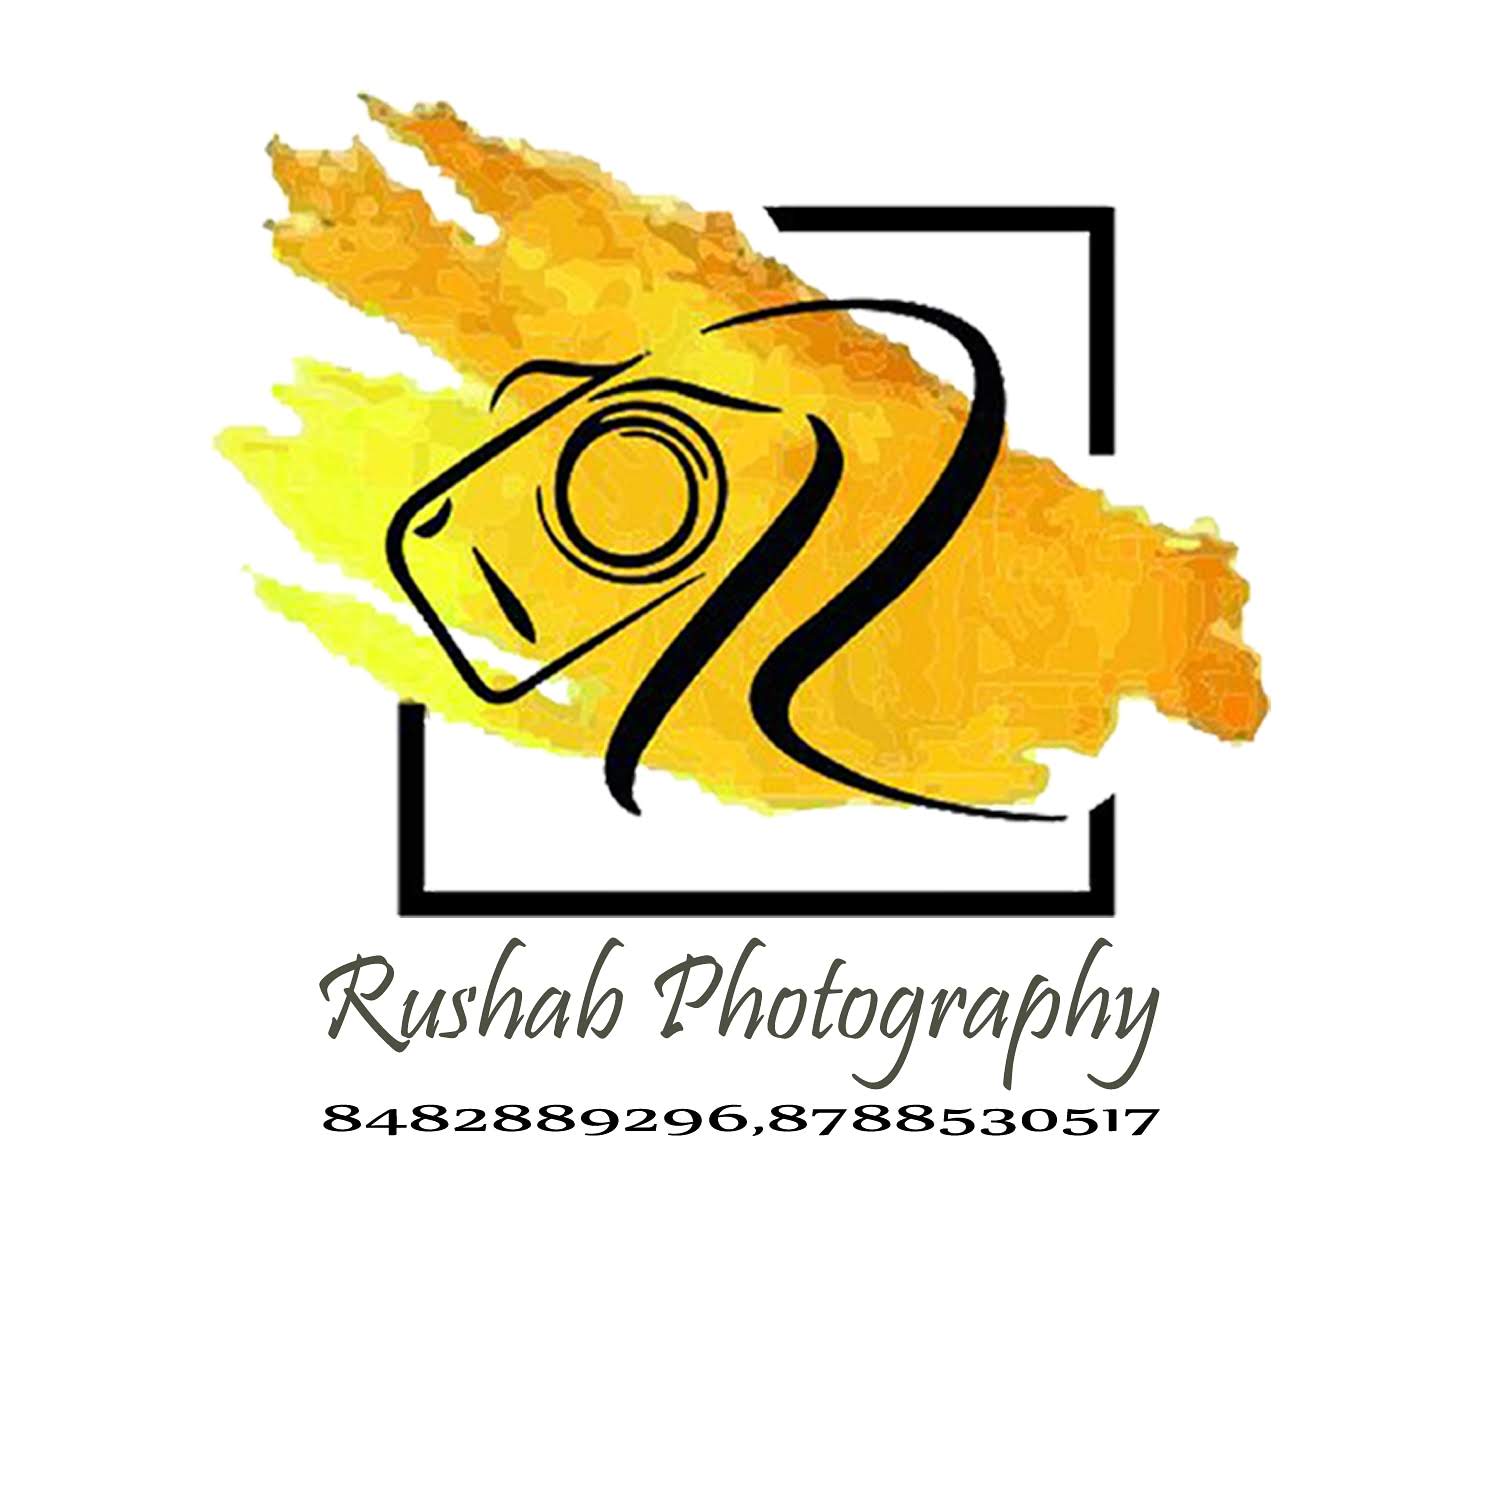 Rushab Photography